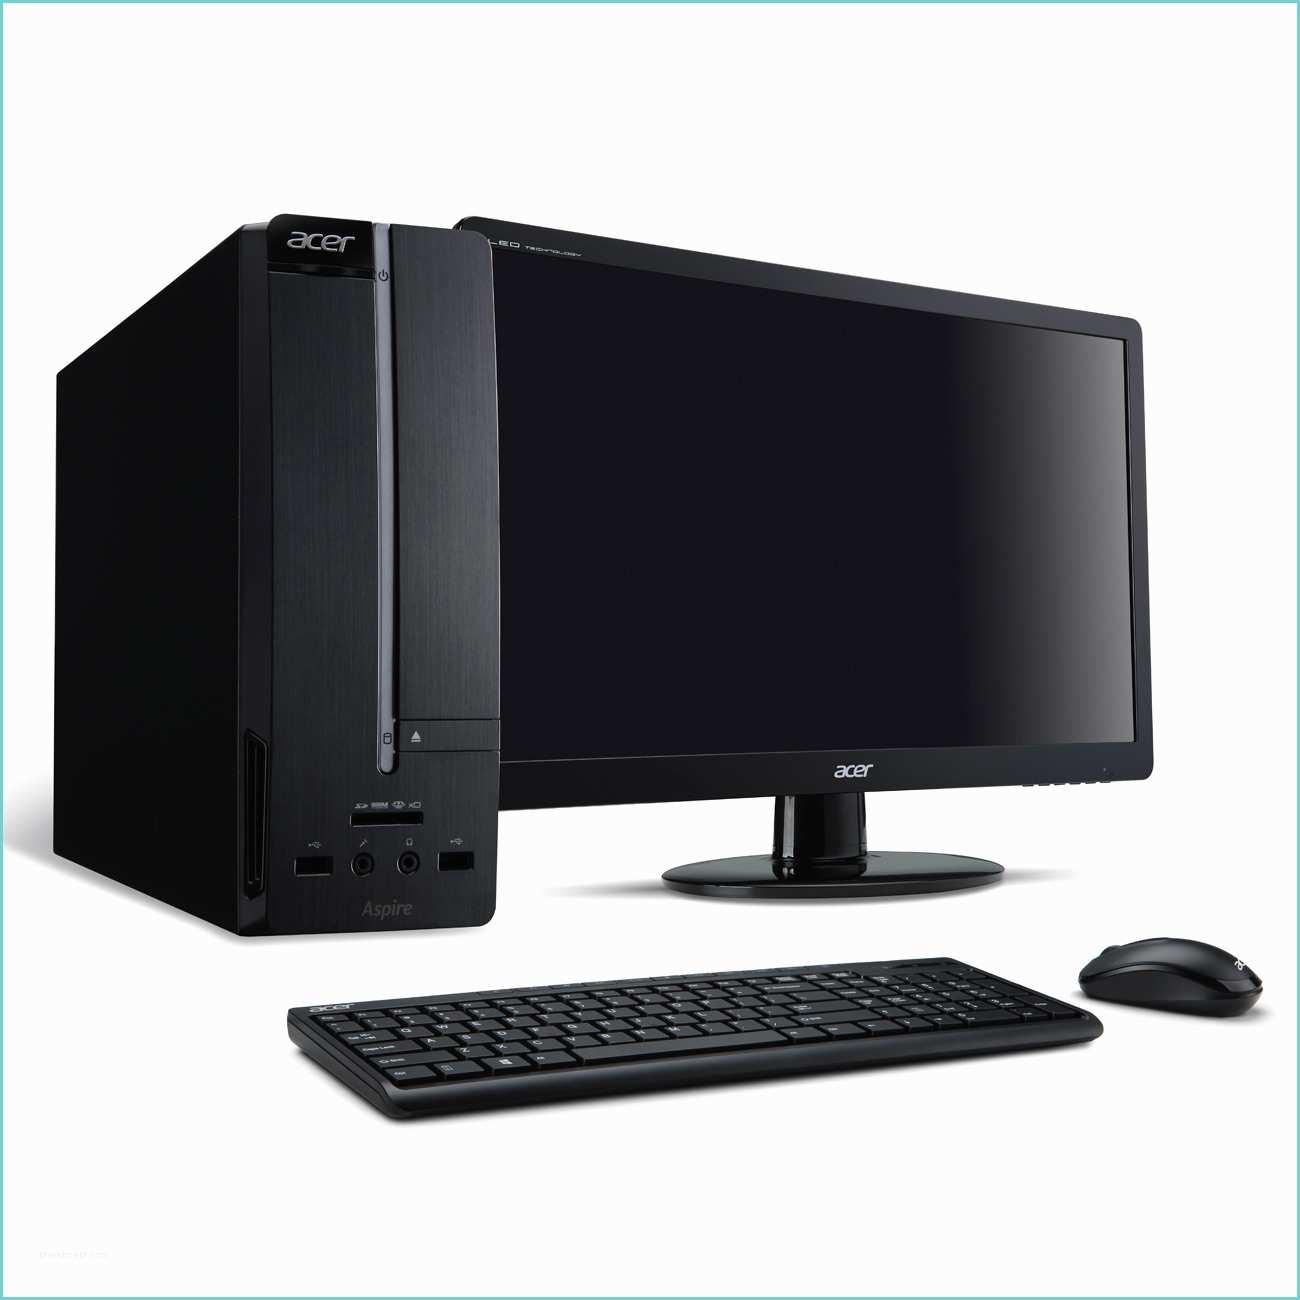 Bureau ordinateur but Acer aspire Xc100 002 Pc De Bureau Acer Sur Ldlc